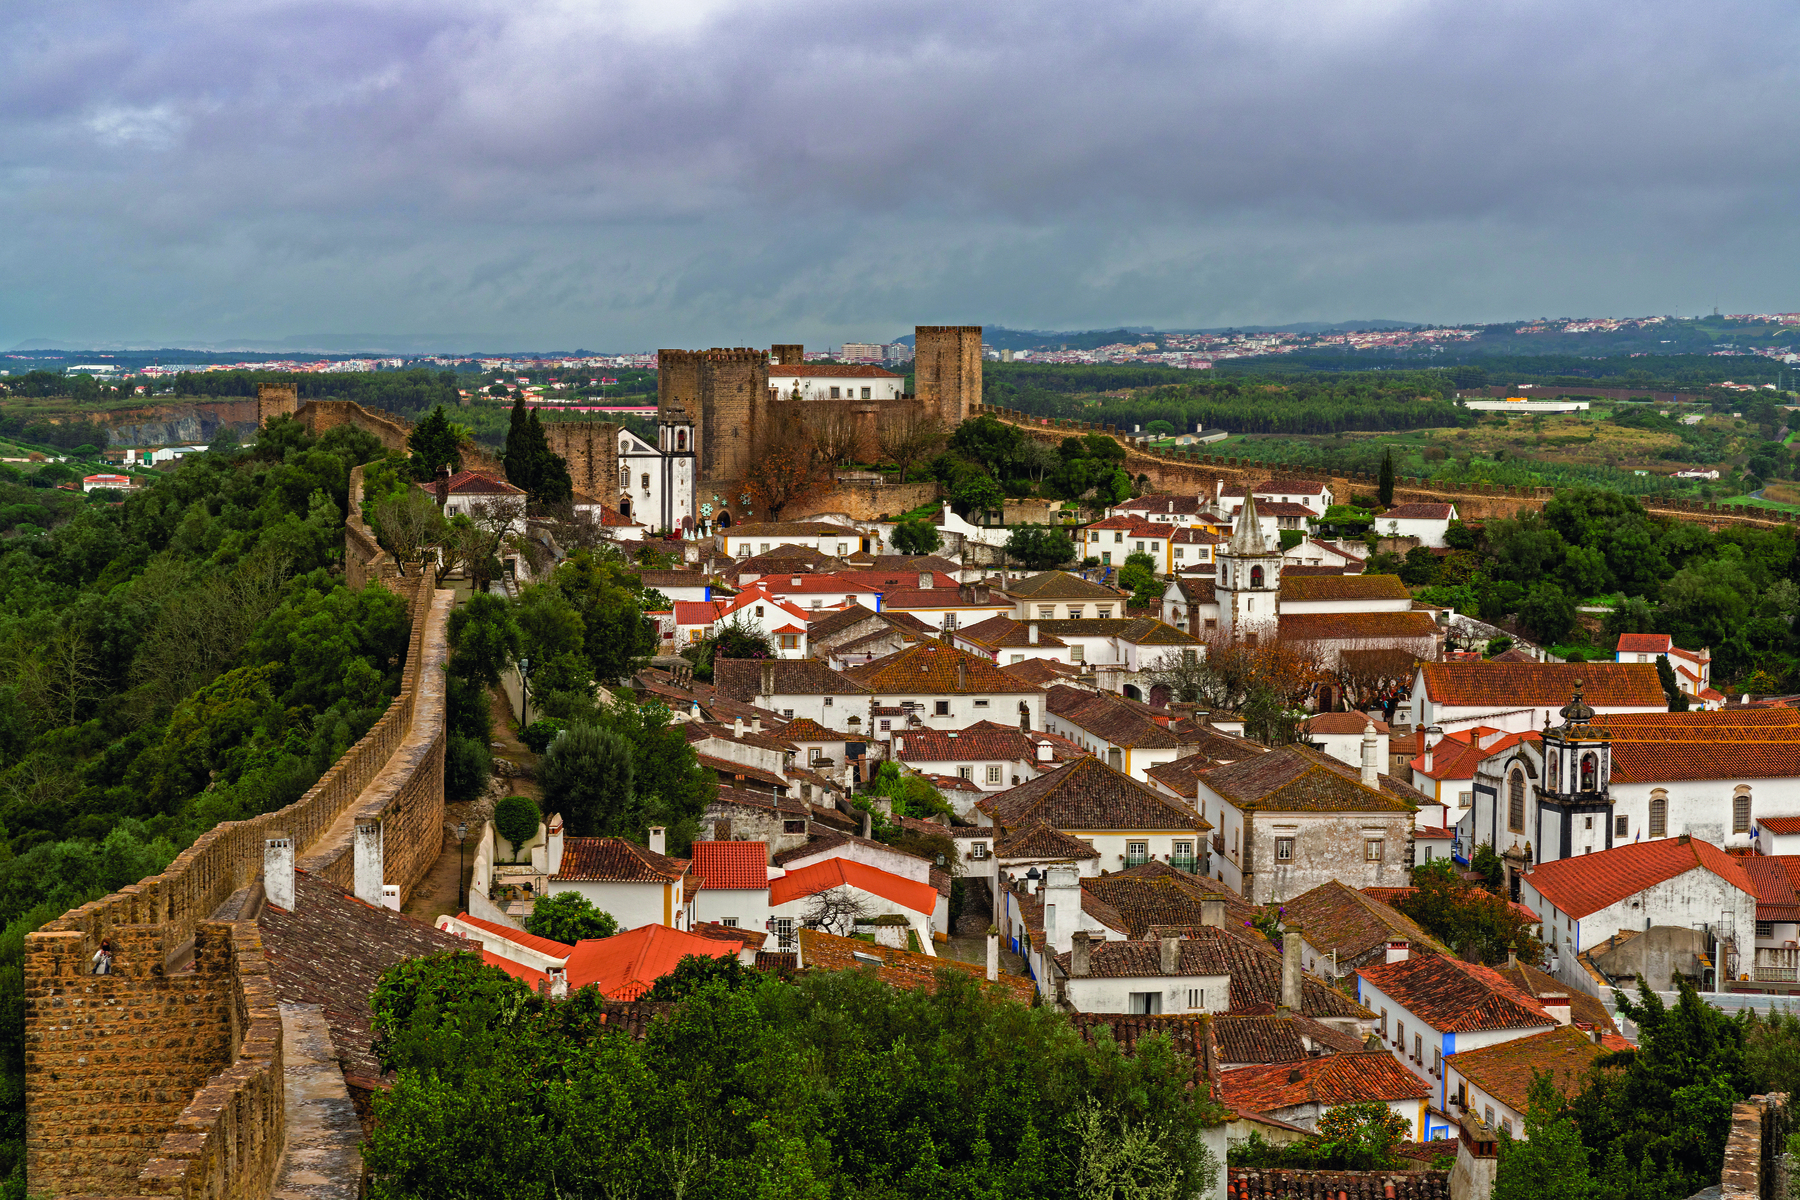 Fotografia. Vista aérea de uma cidade com casas brancas e uma extensa muralha de pedras nos arredores. No lado externo da muralha há vegetação densa.